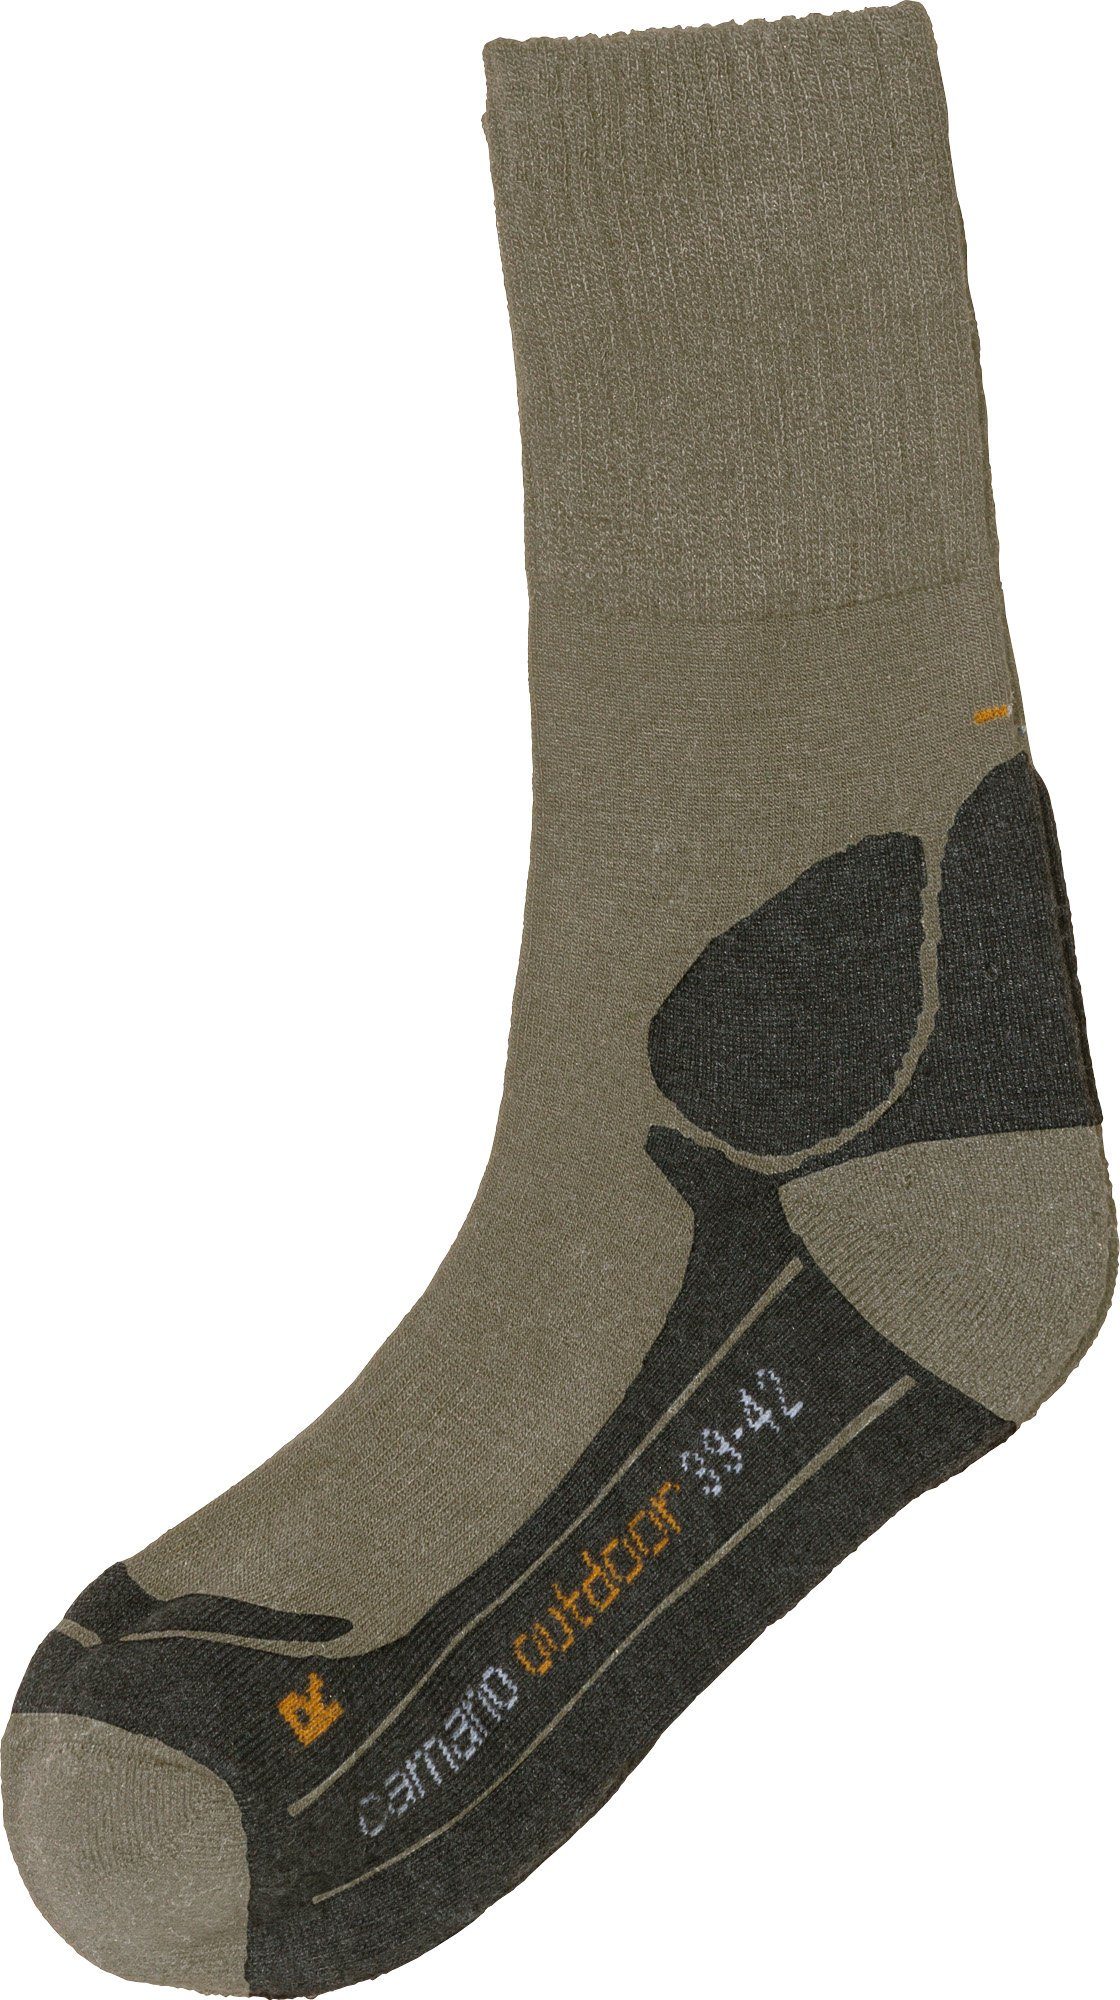 Camano Socken Unisex-Outdoor-Socken 1 Paar Uni hellbraun